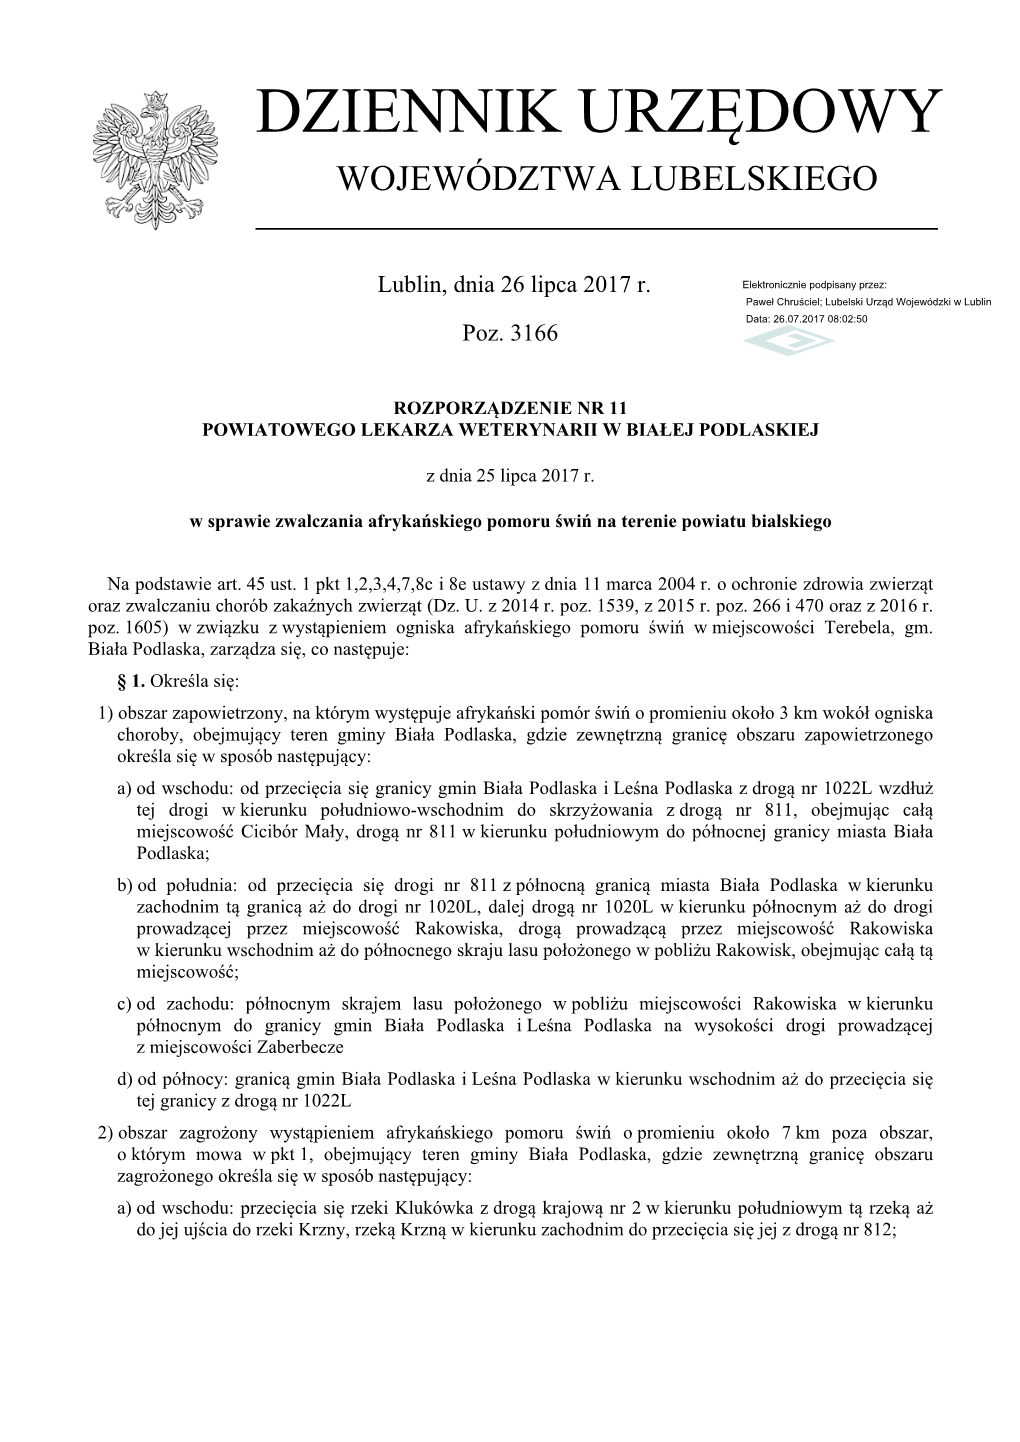 Rozporządzenie Nr 11 PLW W Białej Podlaskiej.Pdf